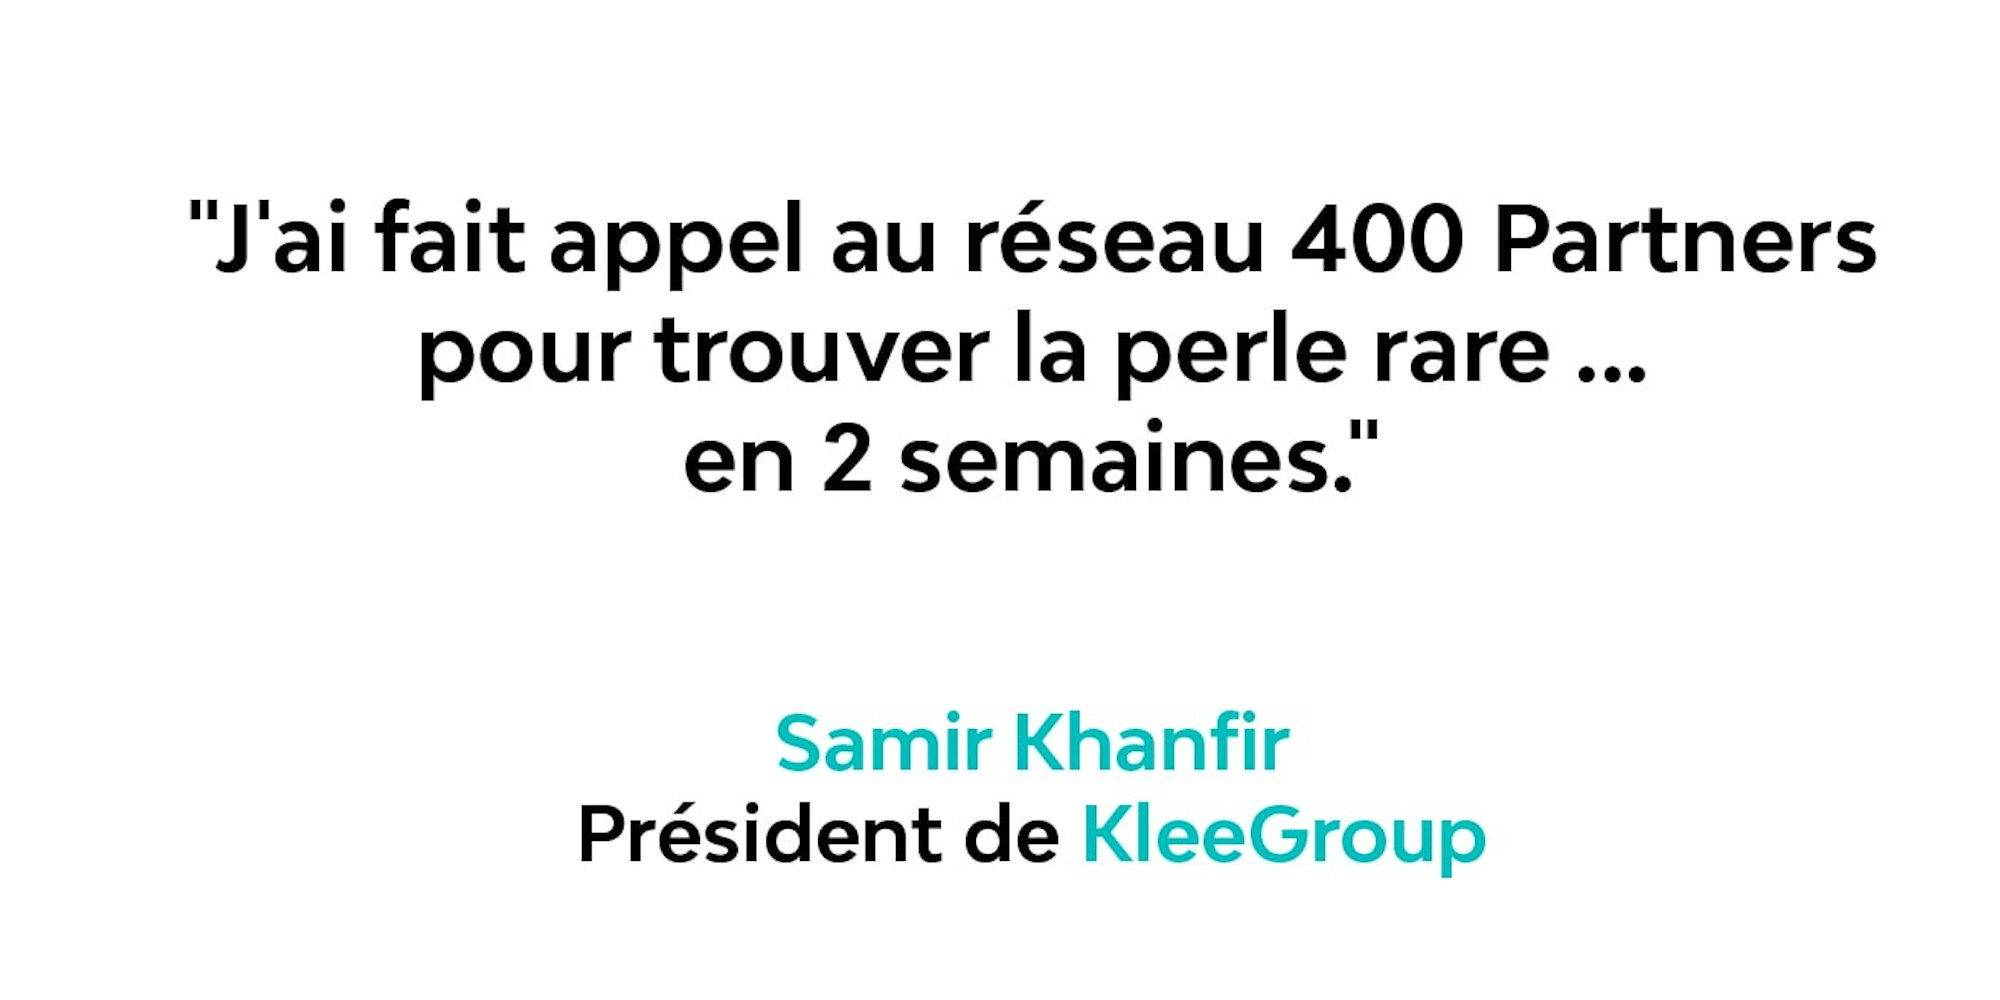 Samir Khanfir, président de KleeGroup et 400 Partners